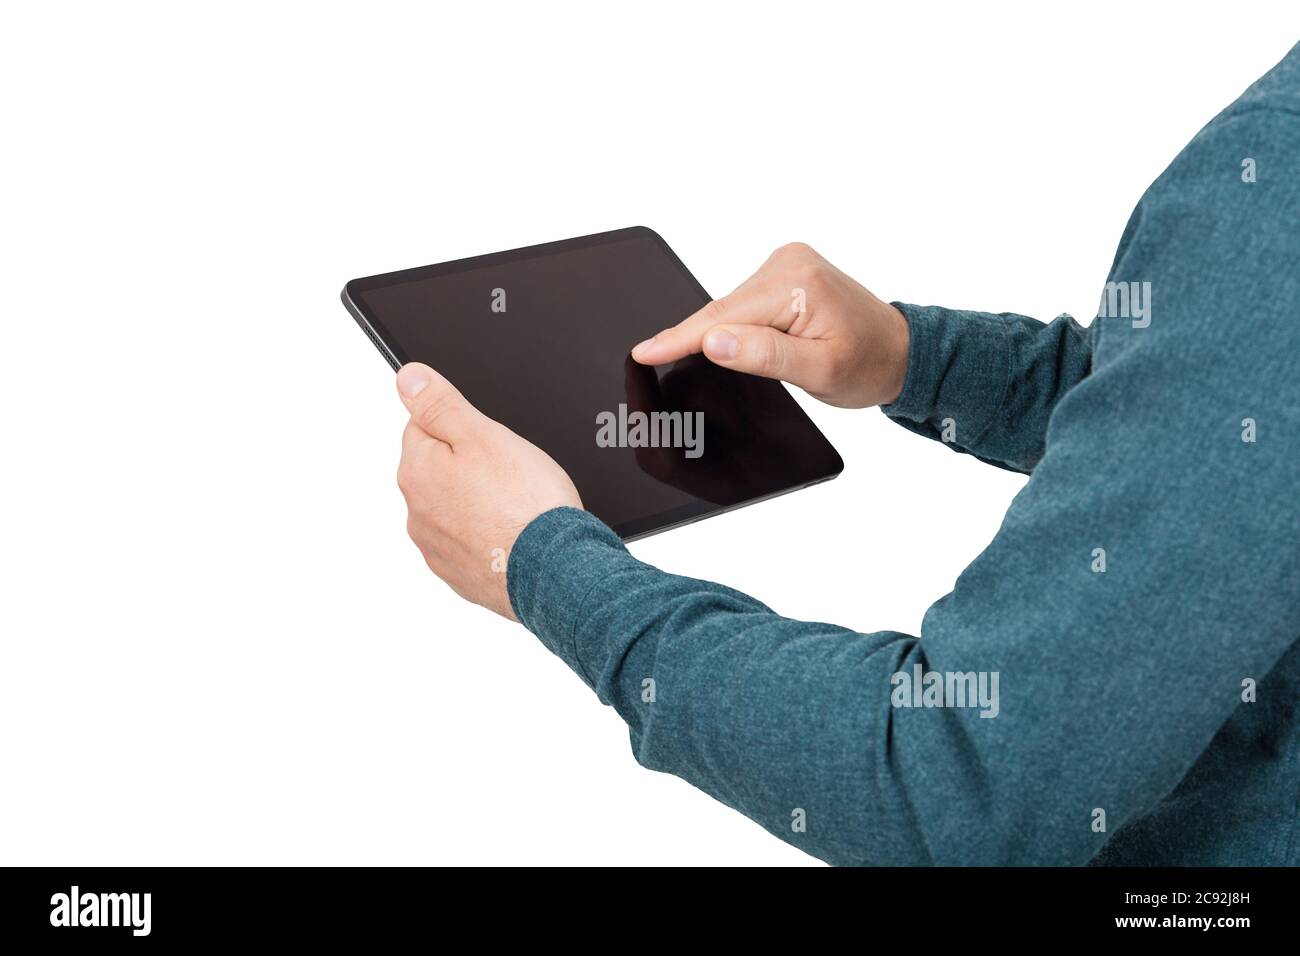 Gros plan des mains de la personne utilisant une tablette PC en appuyant sur l'écran de gadget vierge isolé sur fond blanc avec l'espace de copie. Technologie moderne et educa Banque D'Images